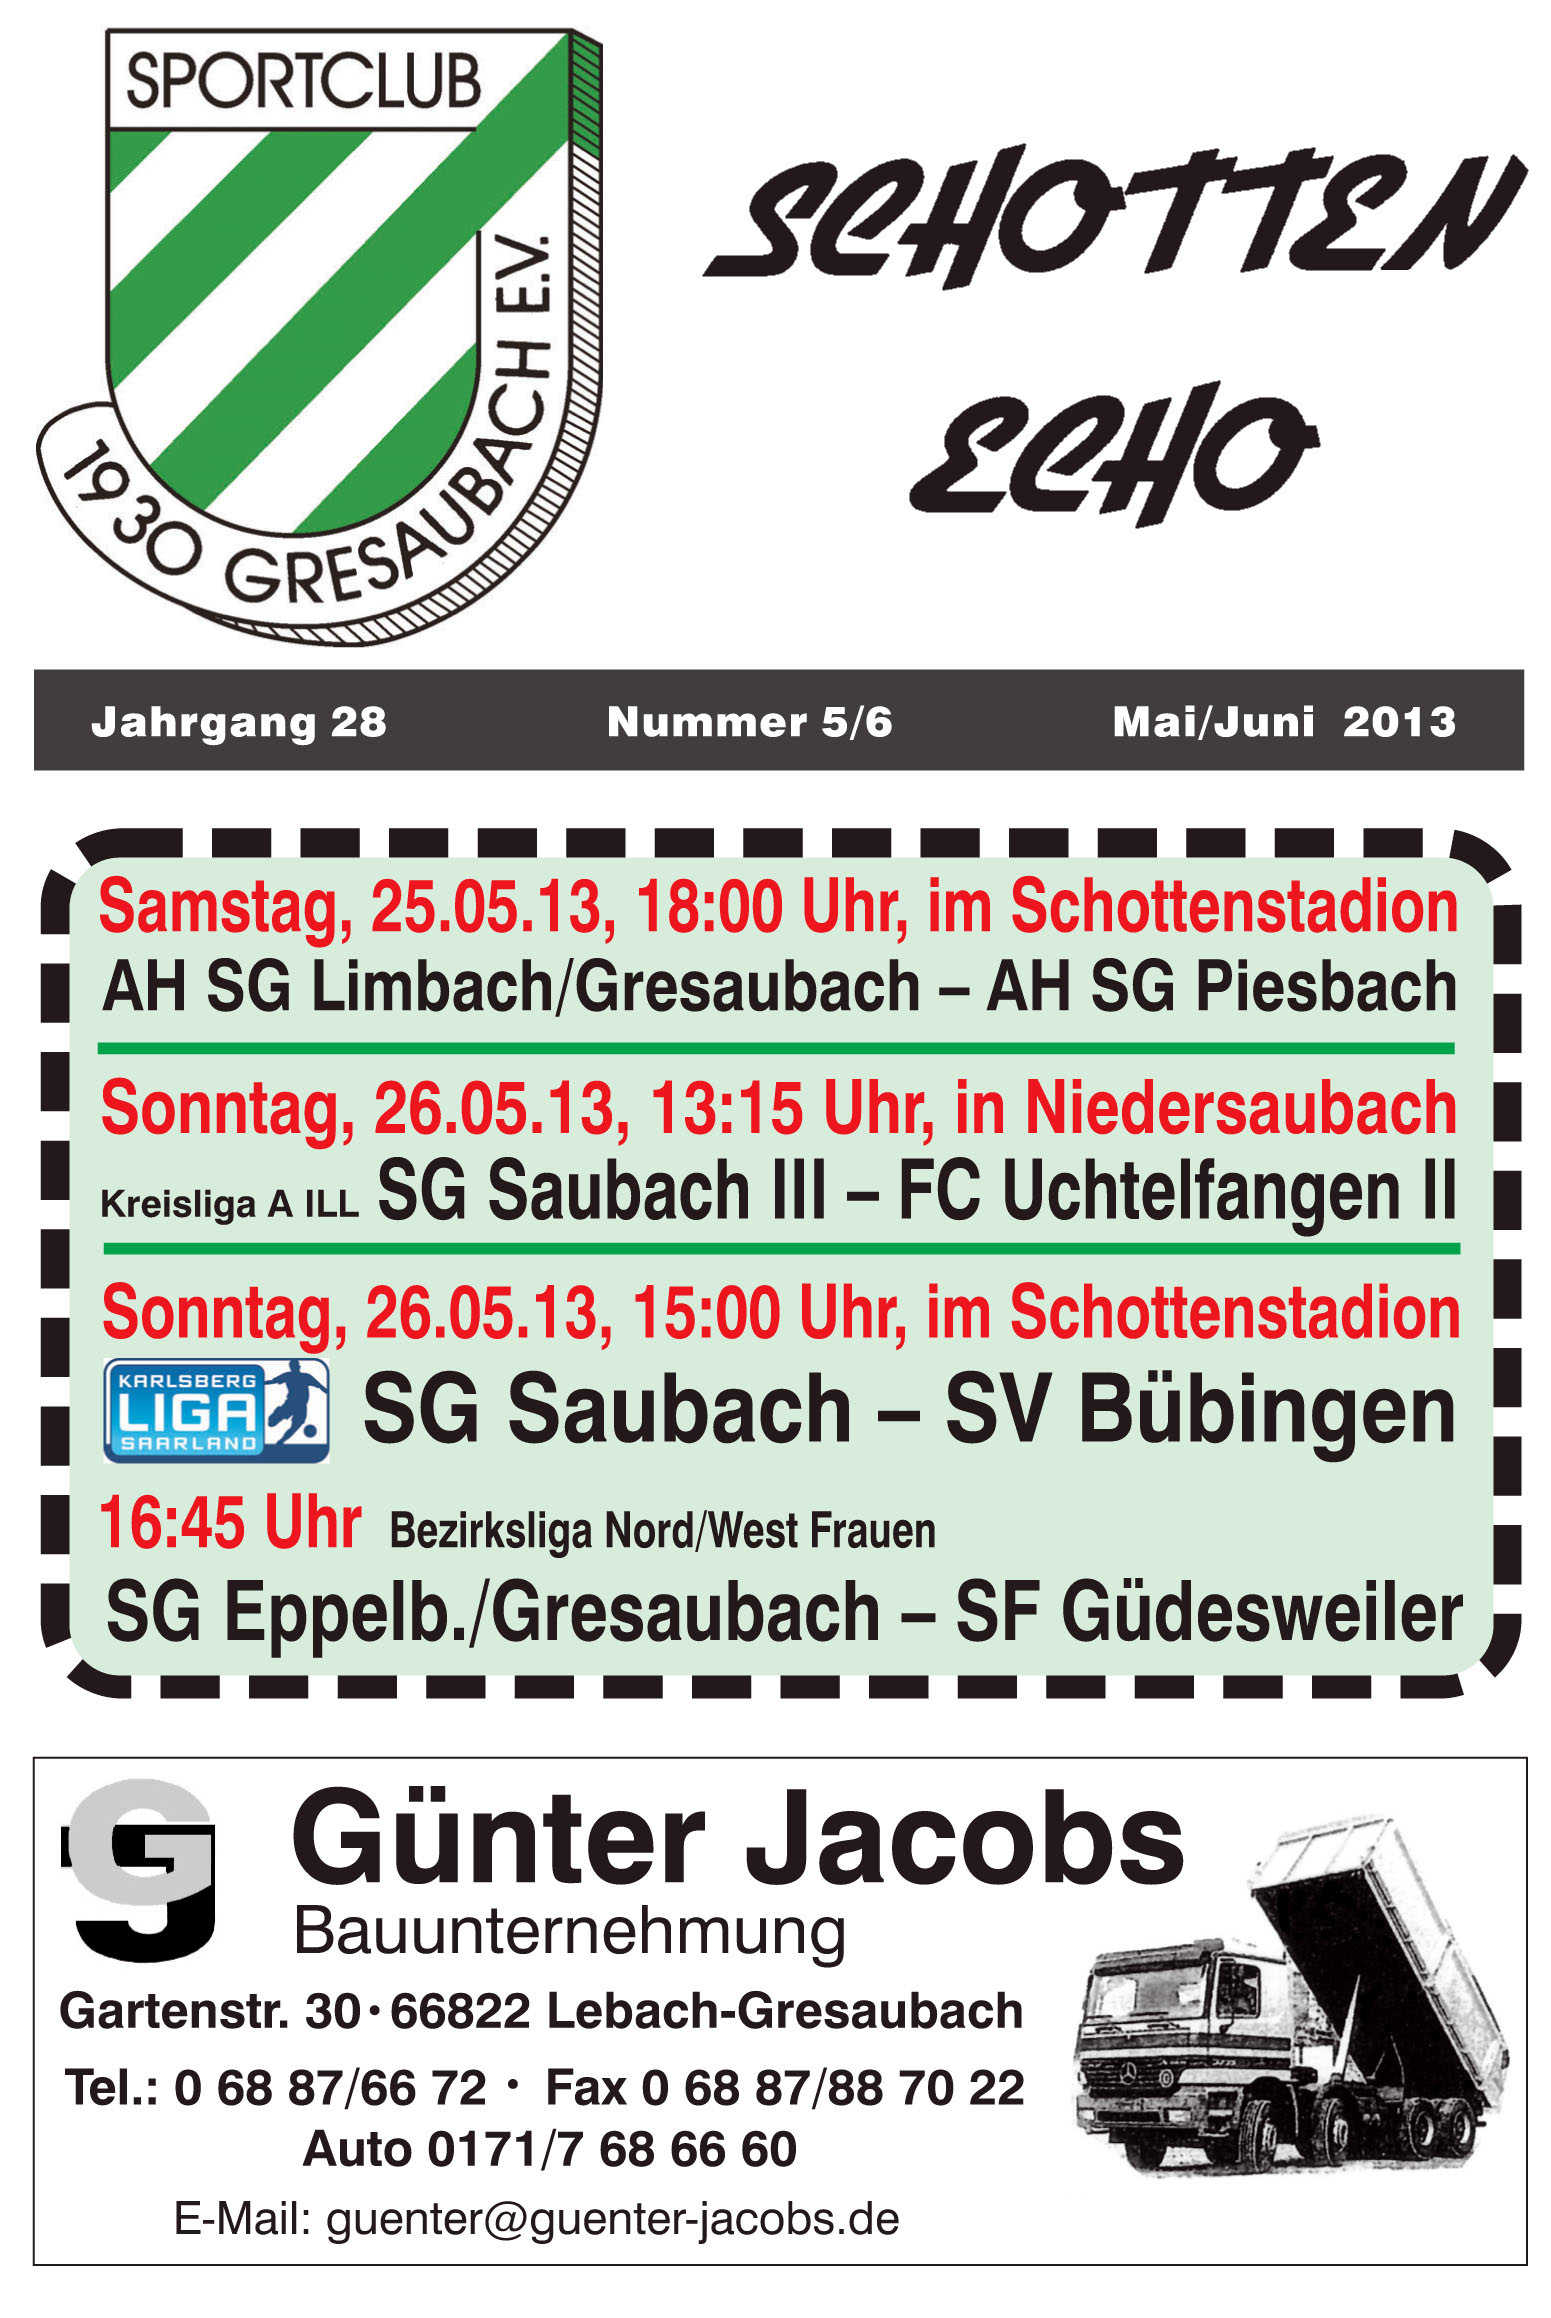 Rückschau 1. Mannschaft Freitag, 19.04.13 SG Saubach SV Hasborn 2:2 Die erste Chance hatten die Gäste aus Hasborn, doch Torhüter Eric Nothof konnte gegen den freistehenden Stürmer parieren.